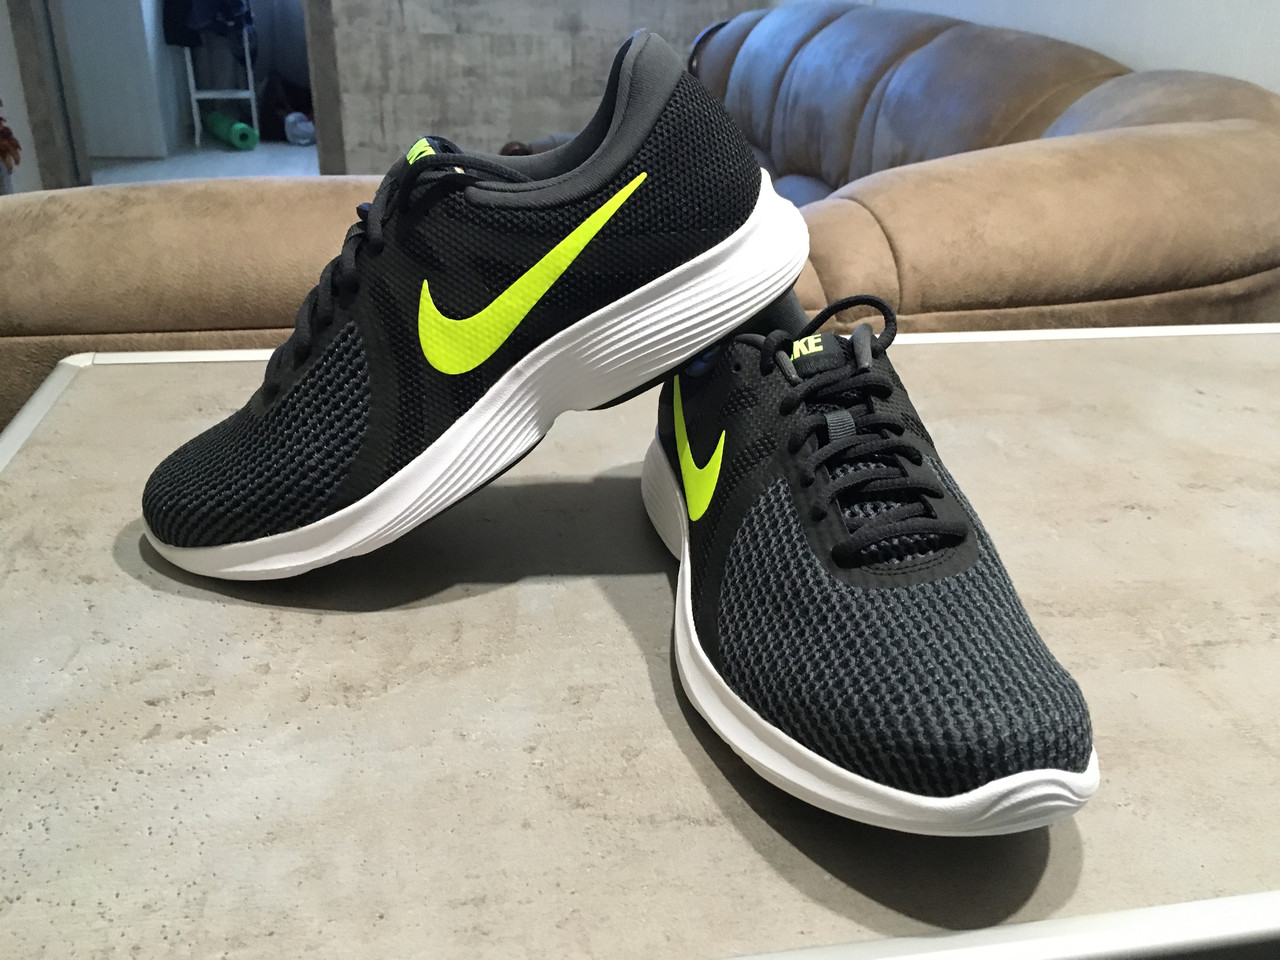 Беговые кроссовки Nike Revolution 4, размеры 43; 44; 45,5; 46., цена 1 230  грн., купить в Харькове — Prom.ua (ID#1136174255)